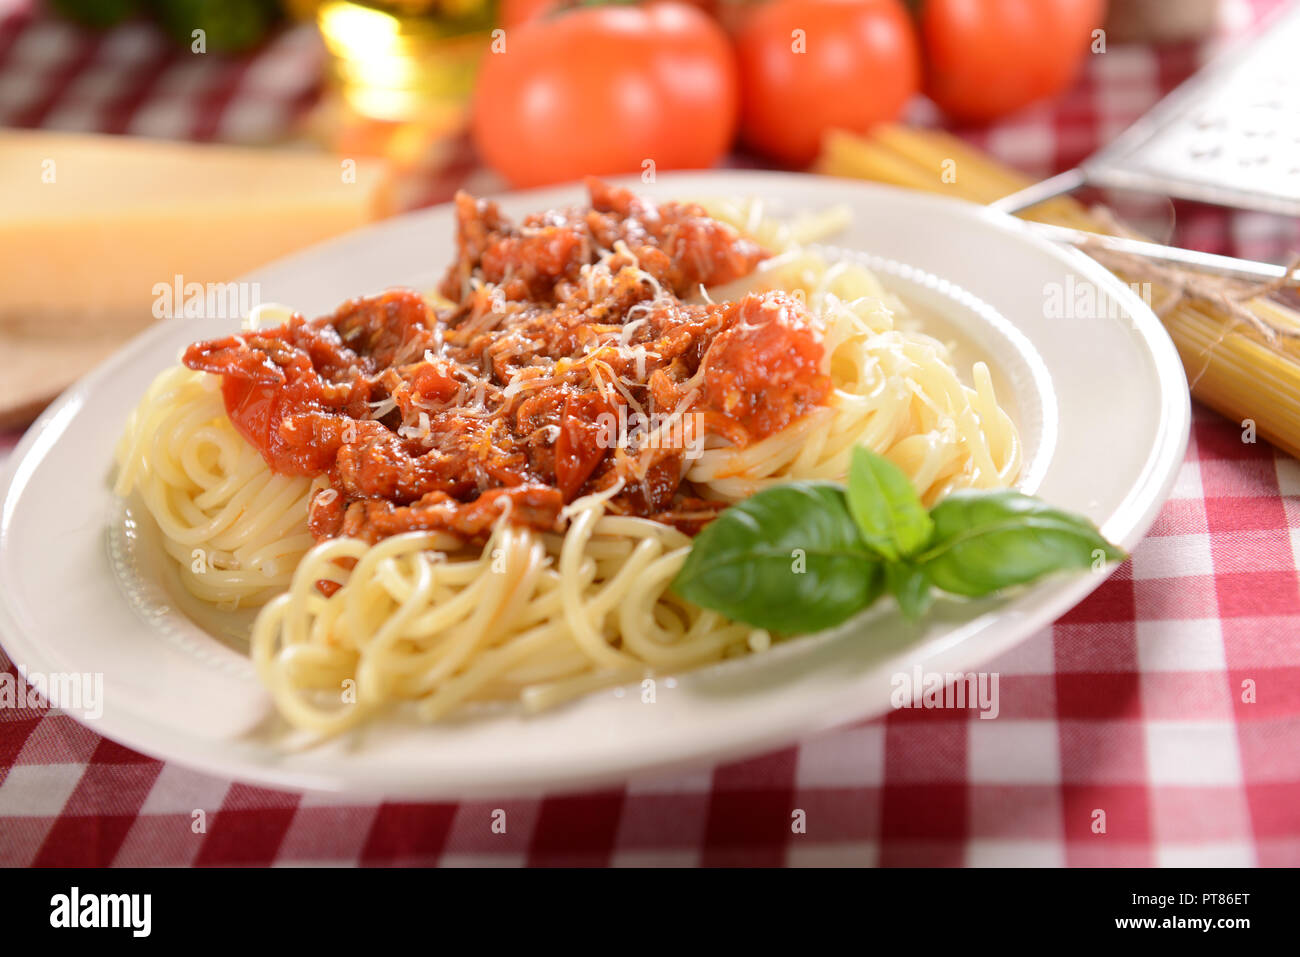 Спагетти болоньезе томатная паста. Спагетти с мясным соусом. Болоньезе в сливочном соусе. Макароны с жидкой подливкой. Паста с жидким соусом.